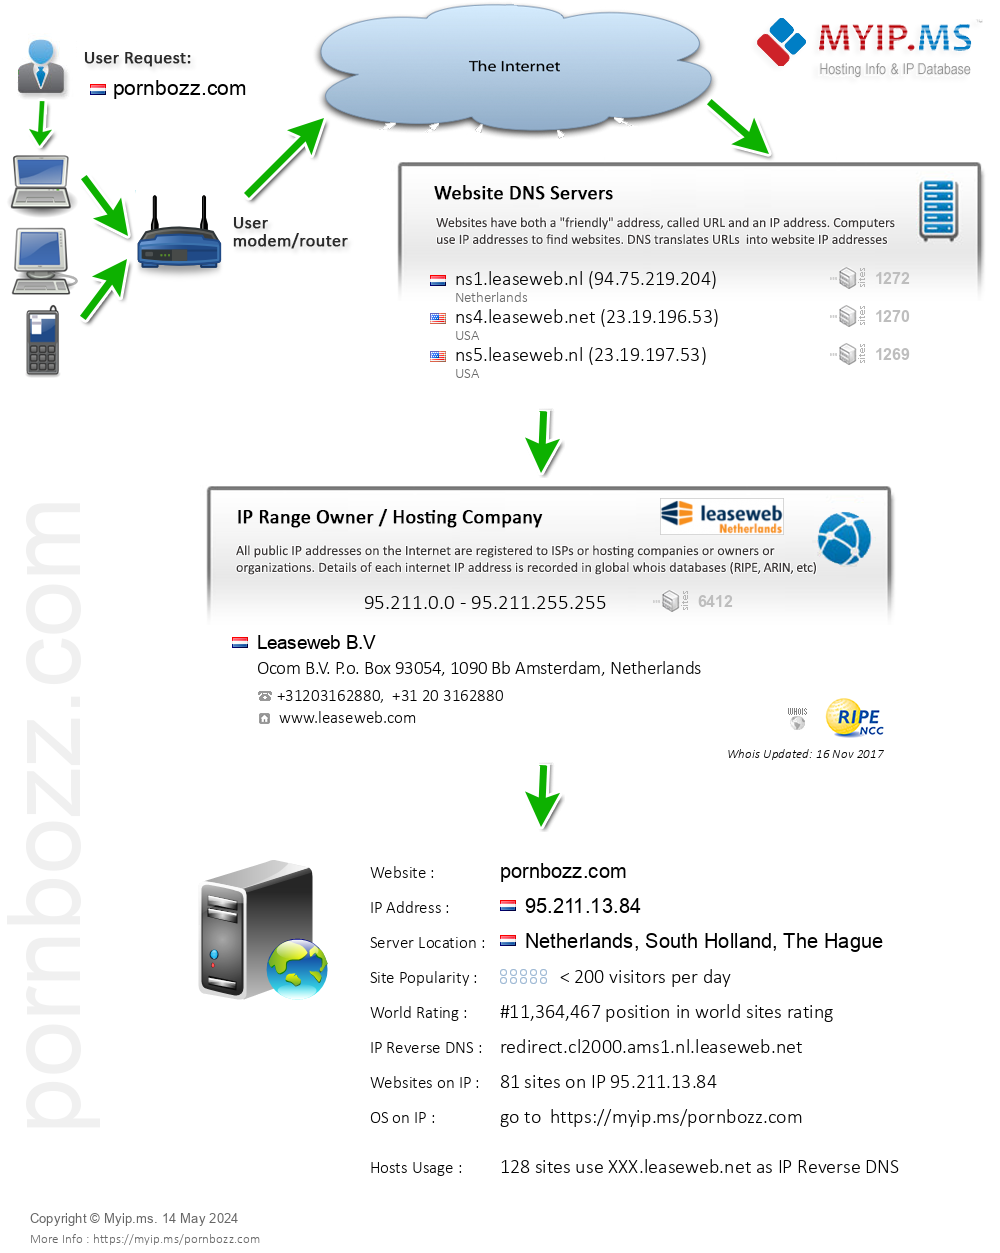 Pornbozz.com - Website Hosting Visual IP Diagram